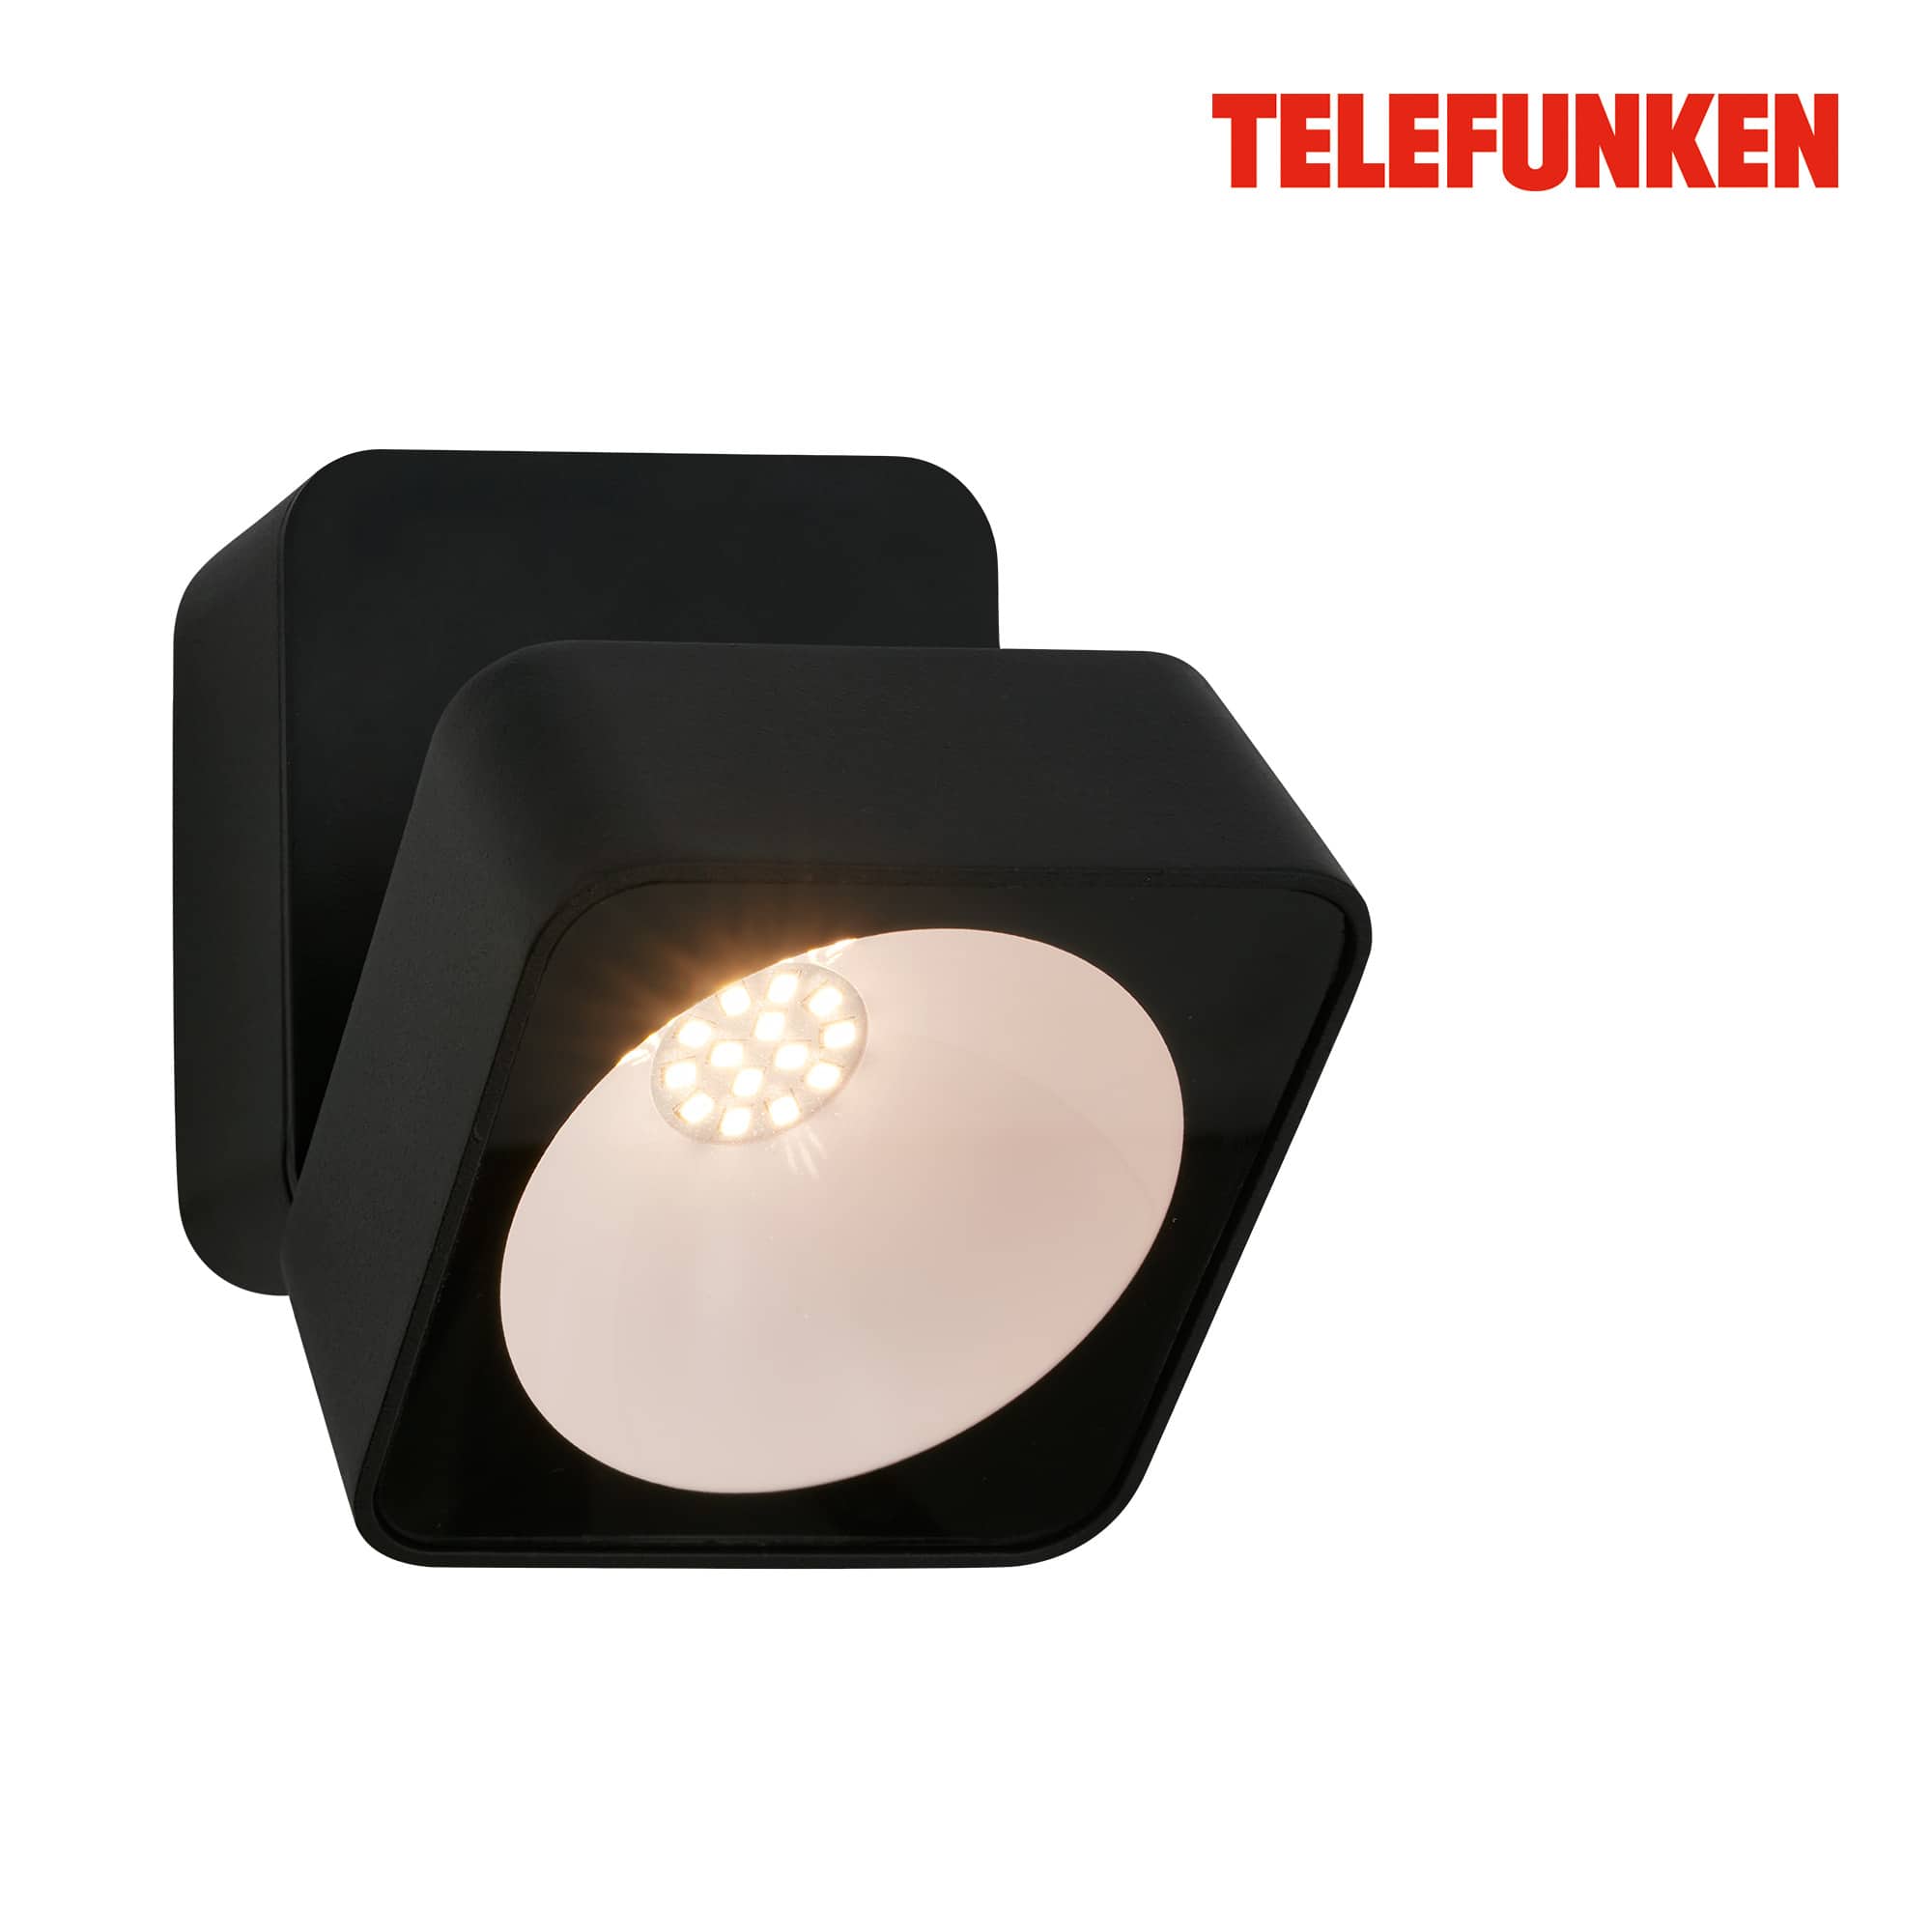 Lampada da parete Telefunken LED, protezione dagli spruzzi d'acqua, On/Off tramite interruttore a parete